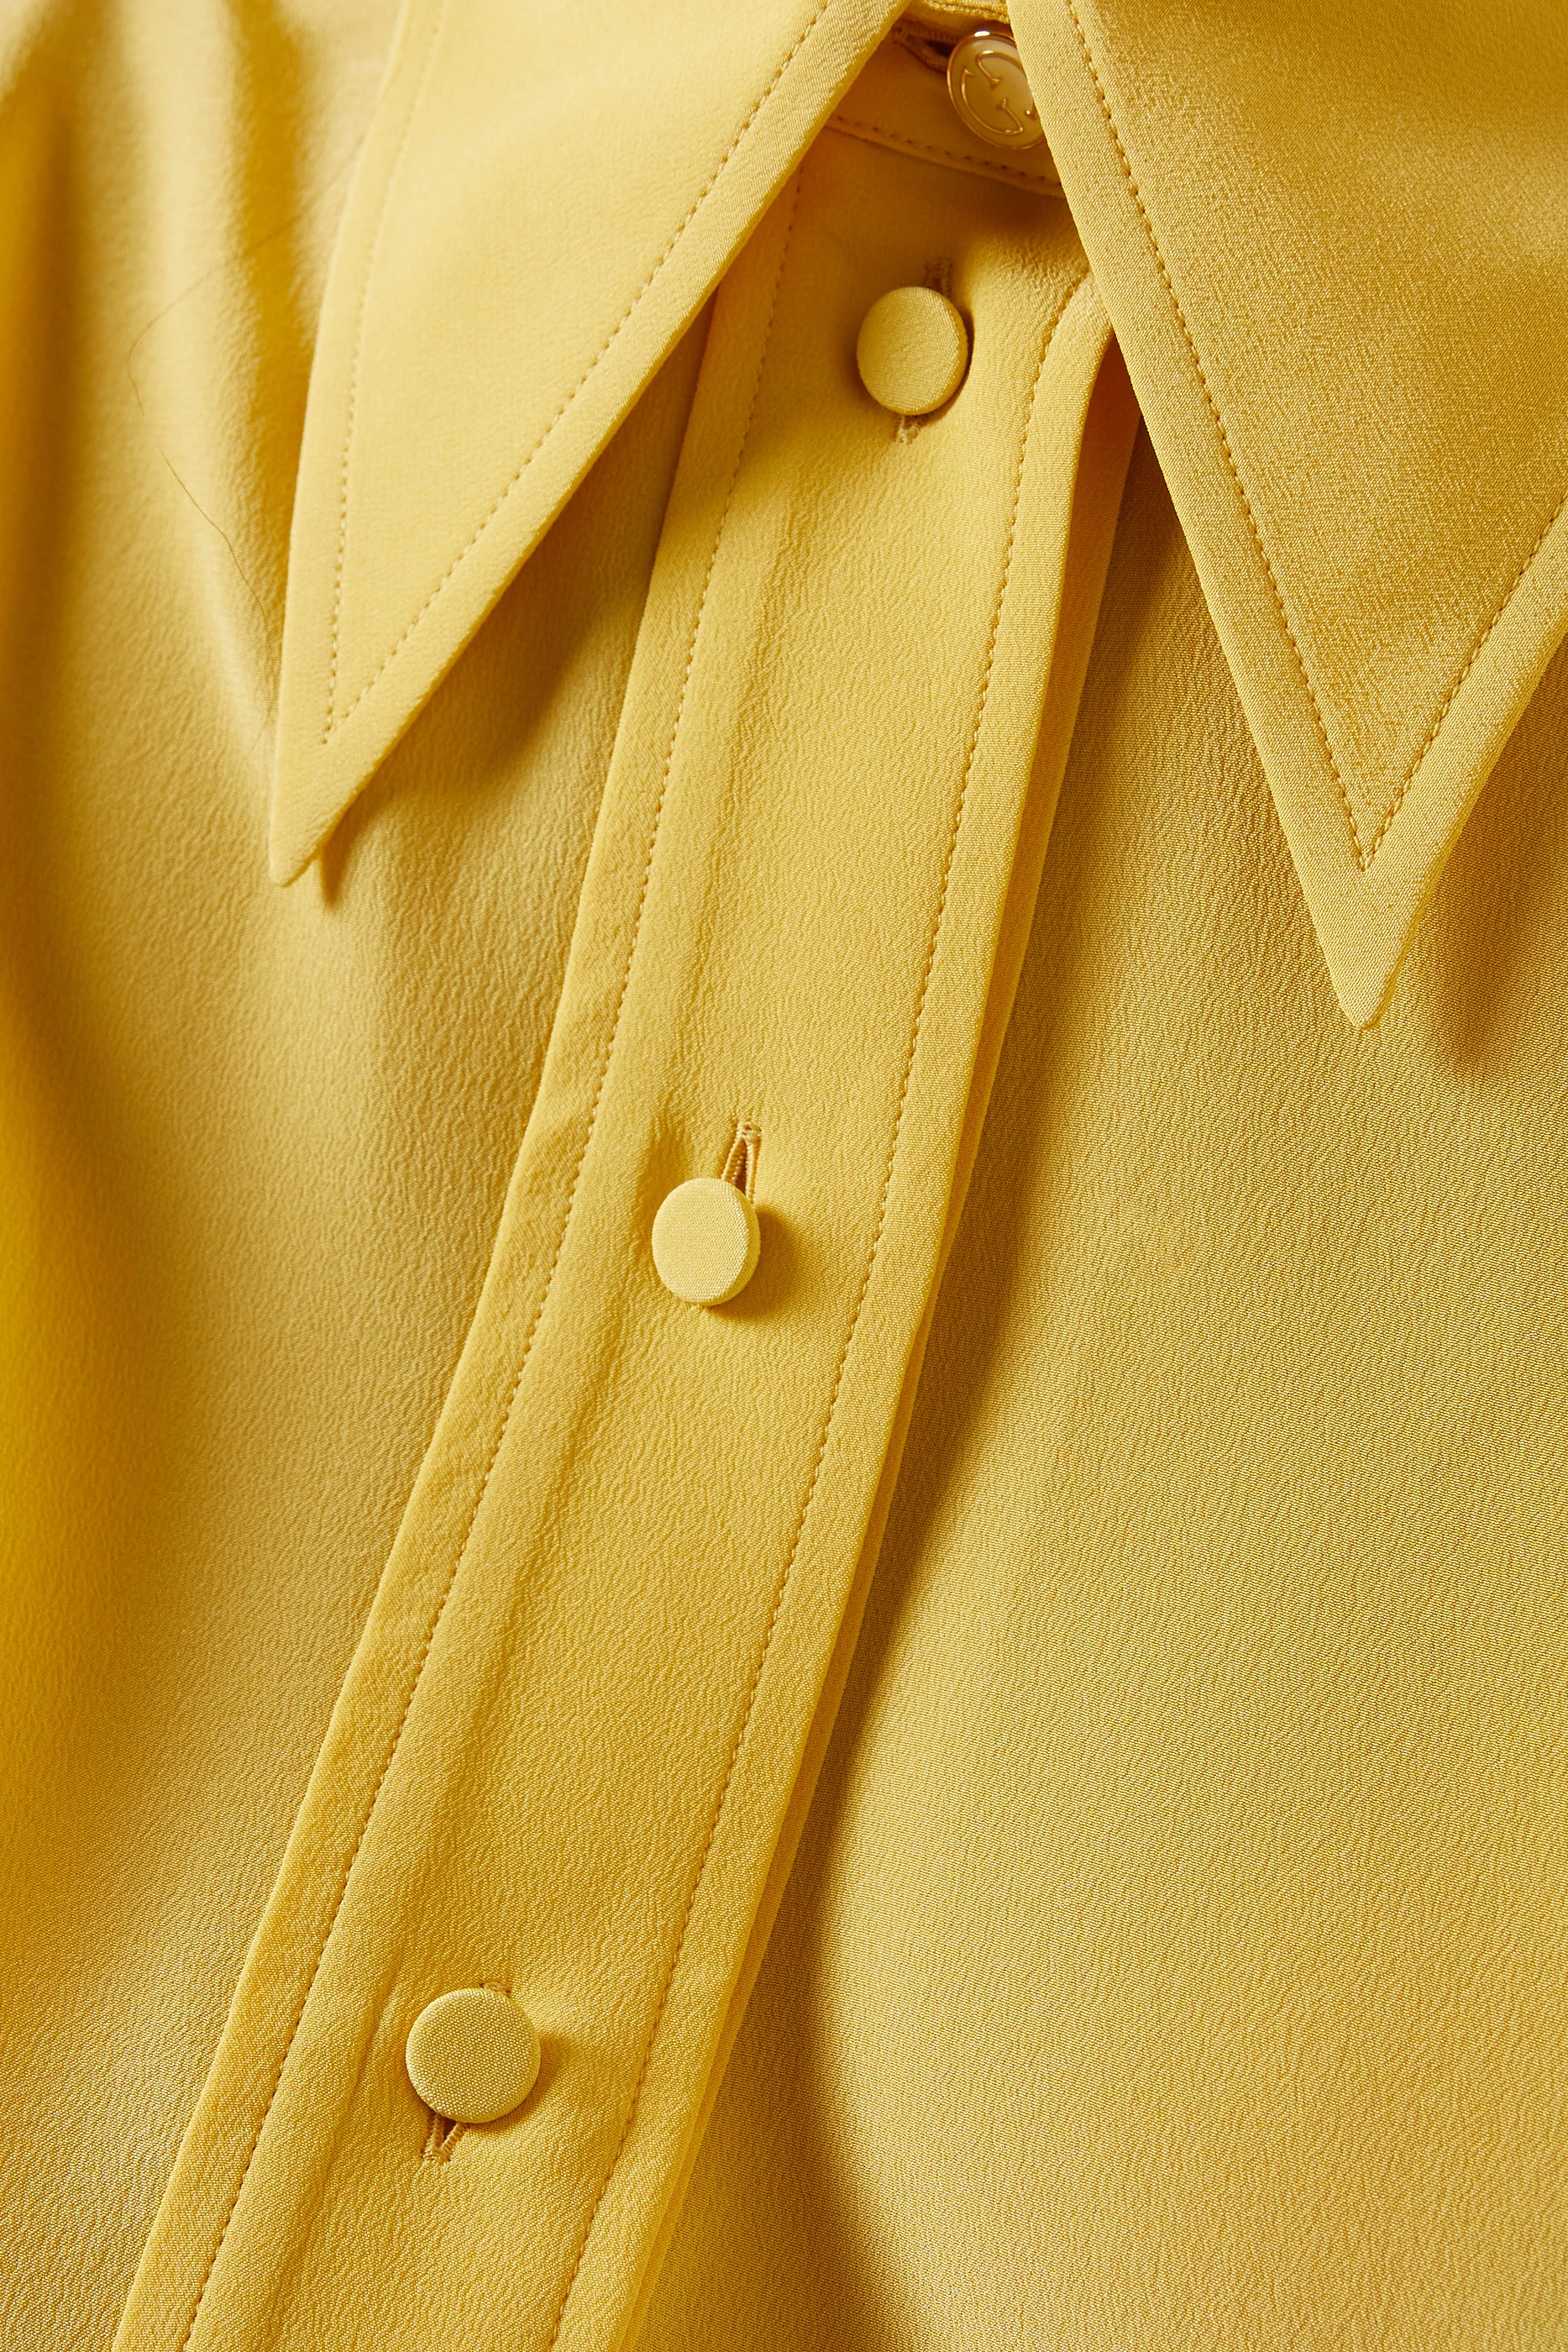 Gucci - Women’s Silk Crêpe de Chine Shirt - (Yellow)